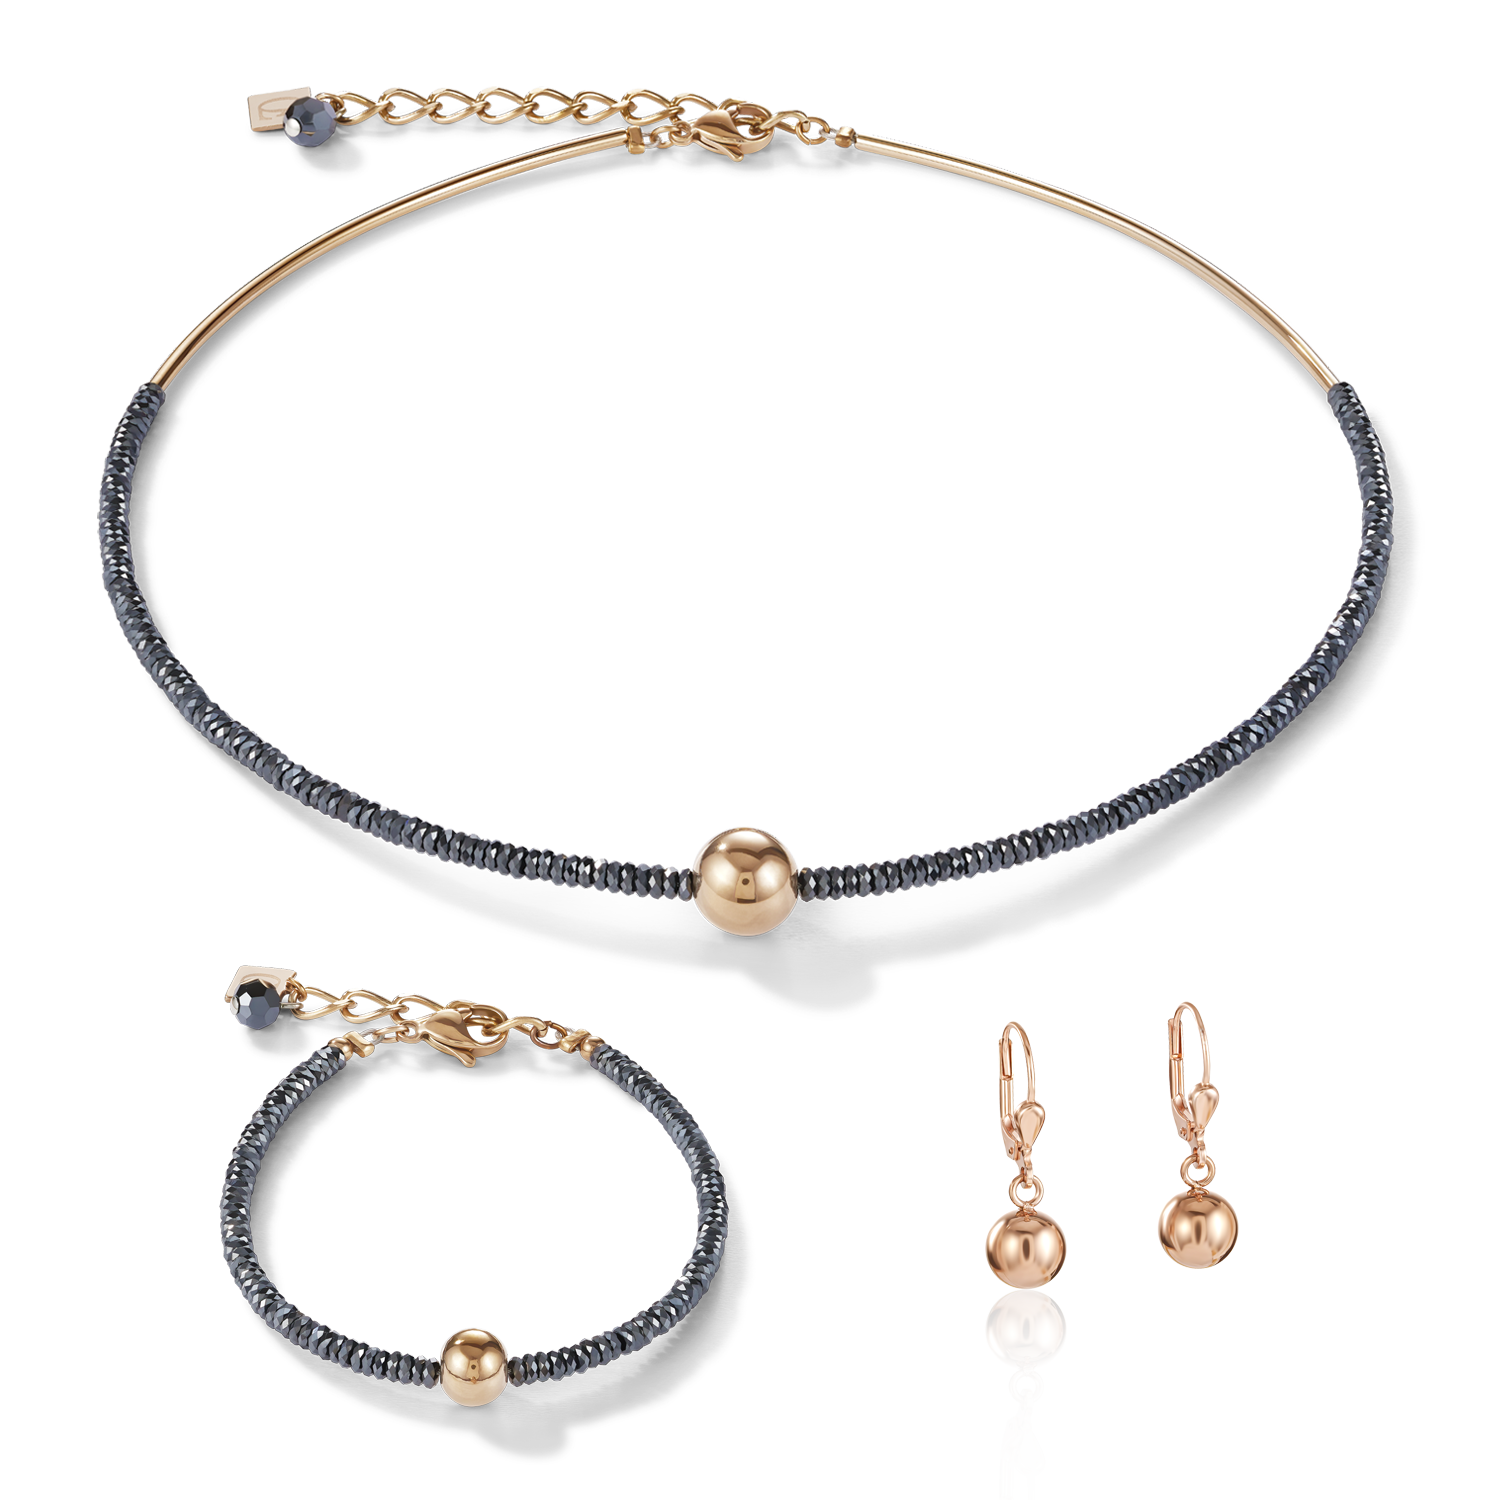 Bracelet haematite & stainless steel rose gold